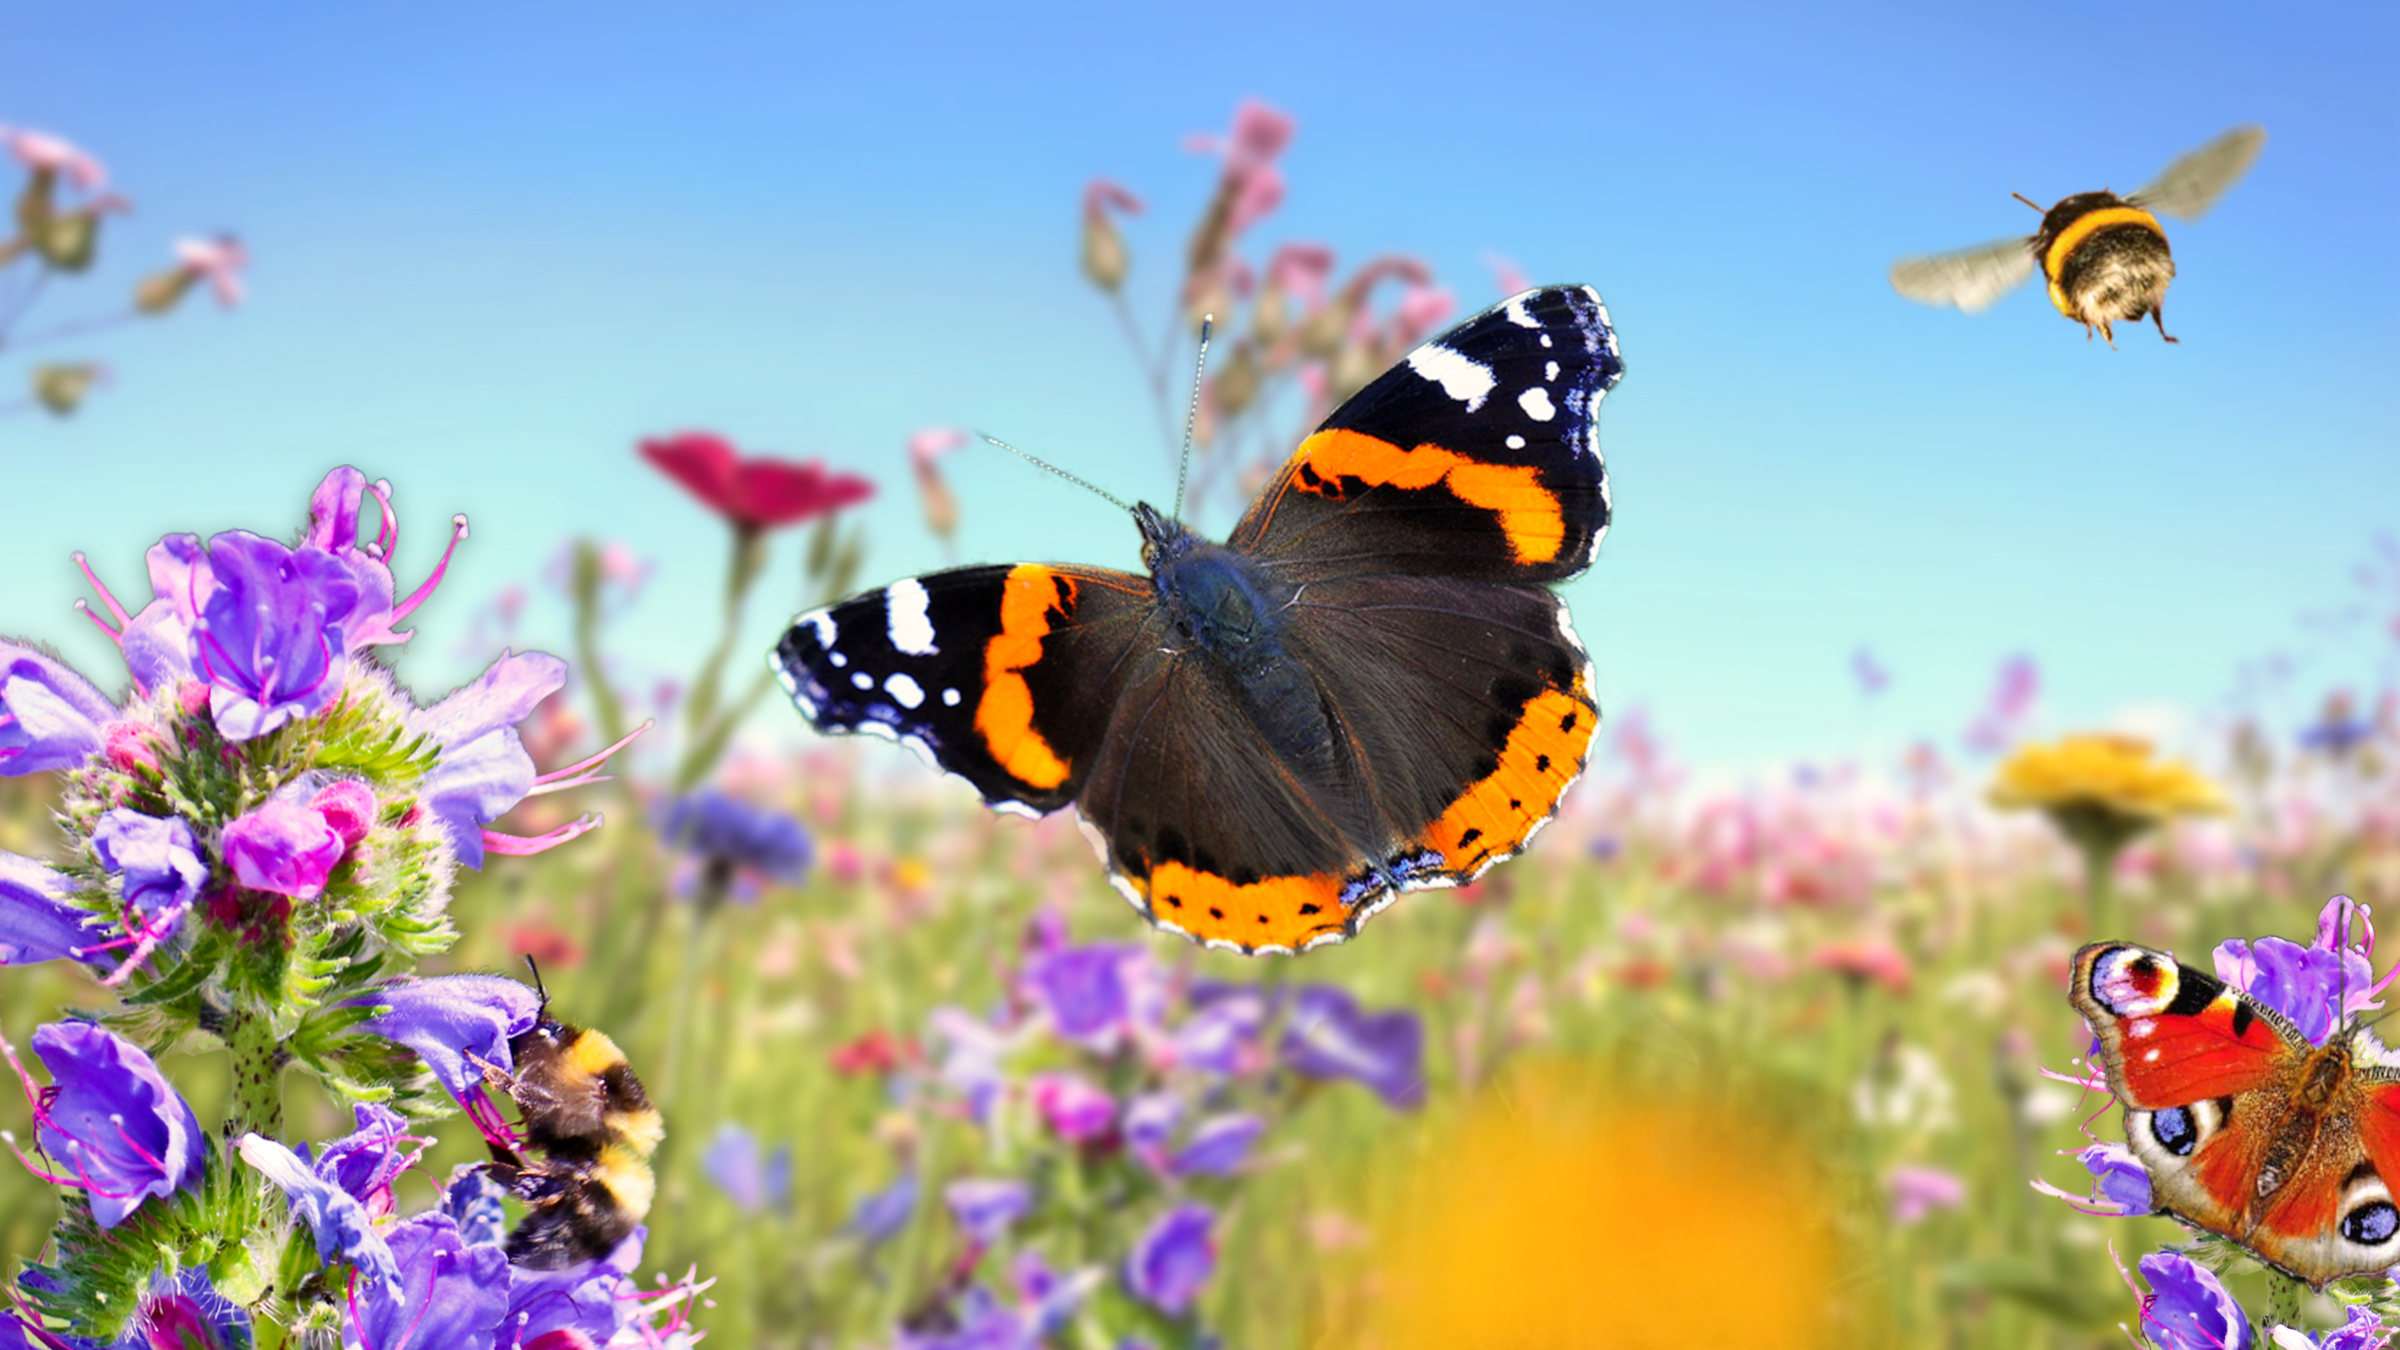 Eine Schutzzone für Insekten, Schmetterlinge und Co – Freiflächenw ie diese sind ein unverzichtbarer Lebensraum.